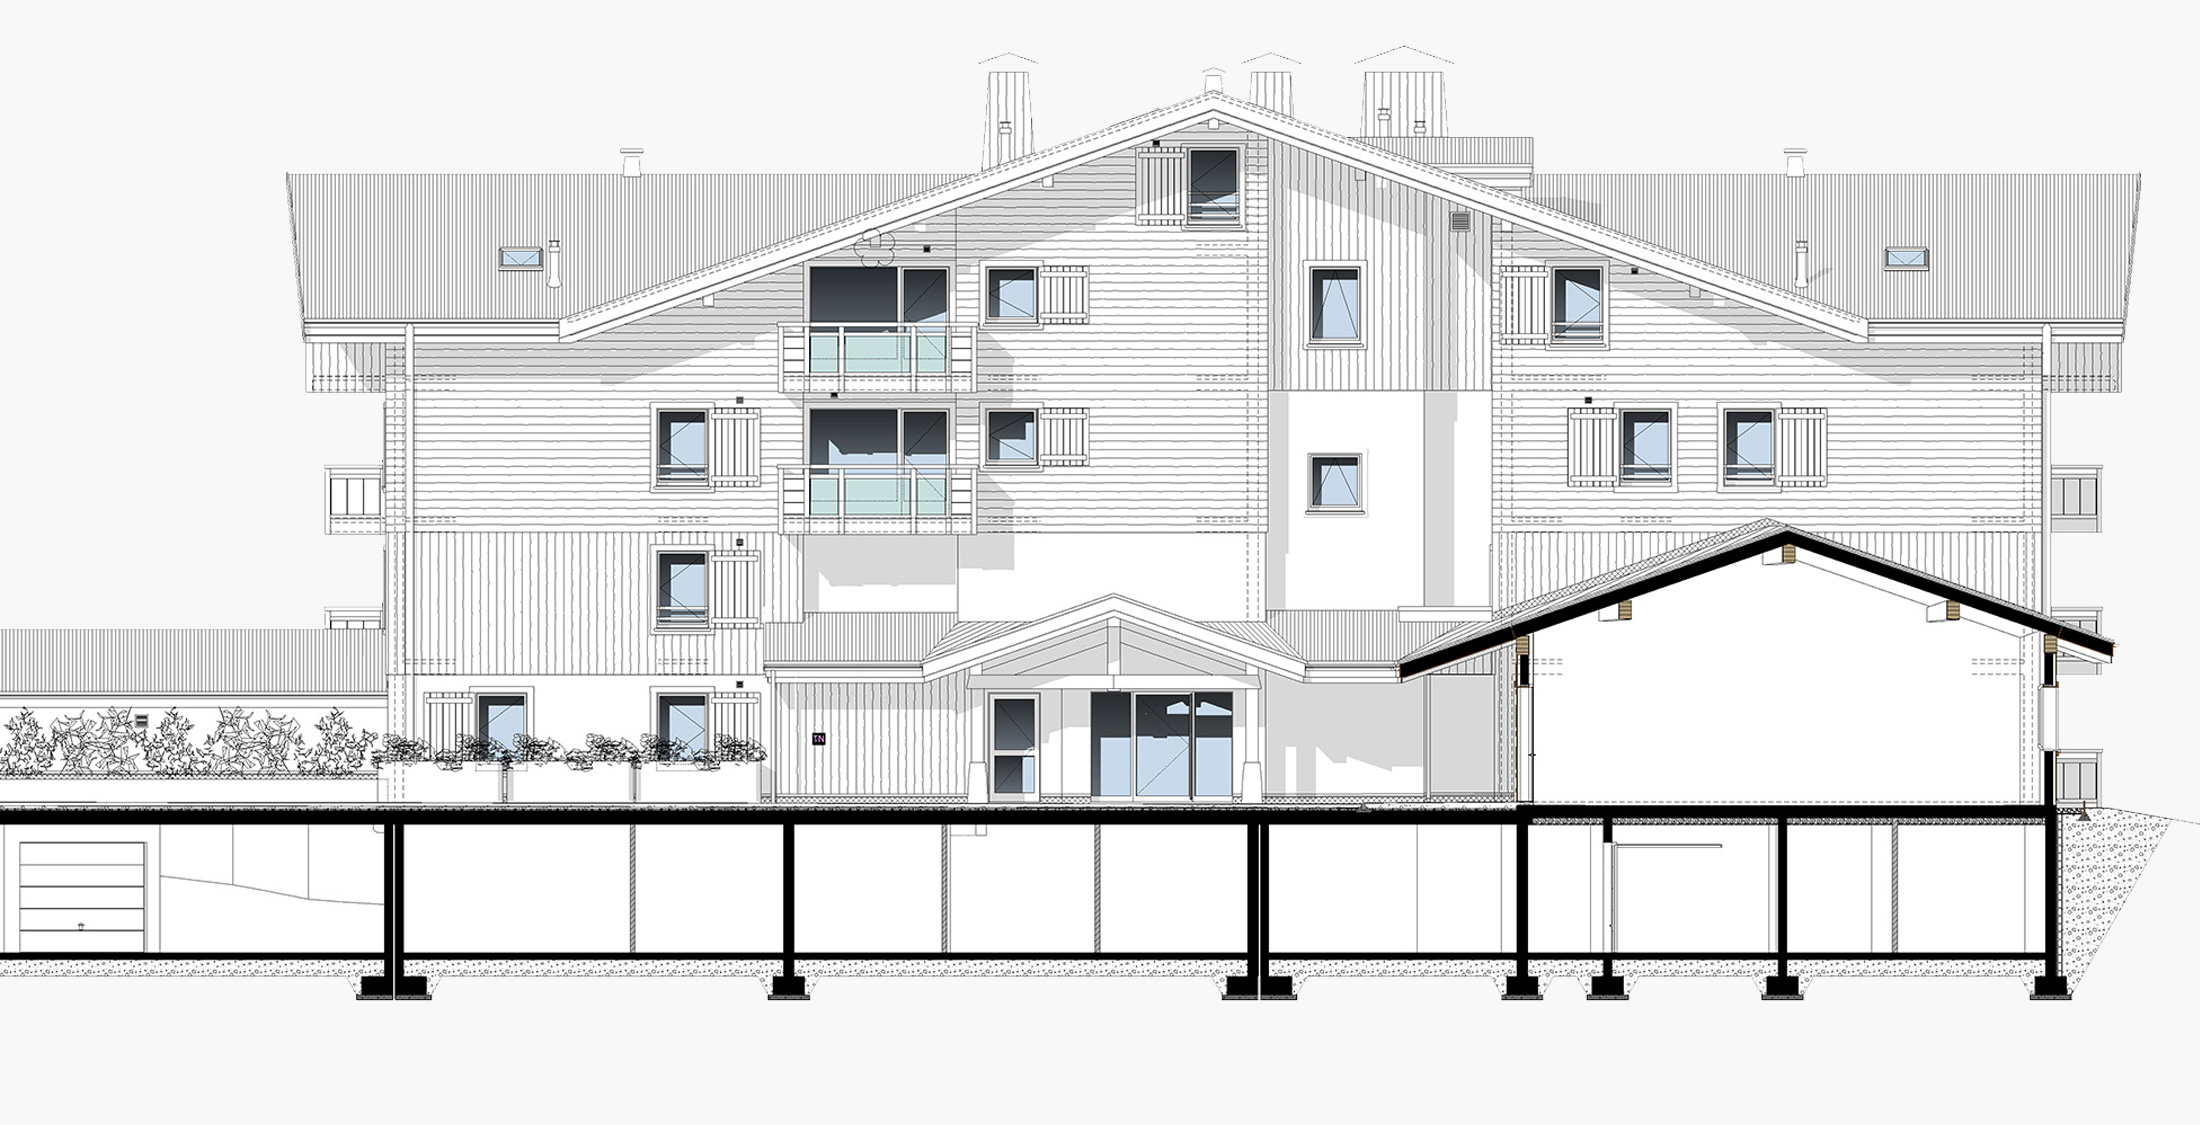 Dossier permis de construire pour garage, extension, maison - Savoie Plan